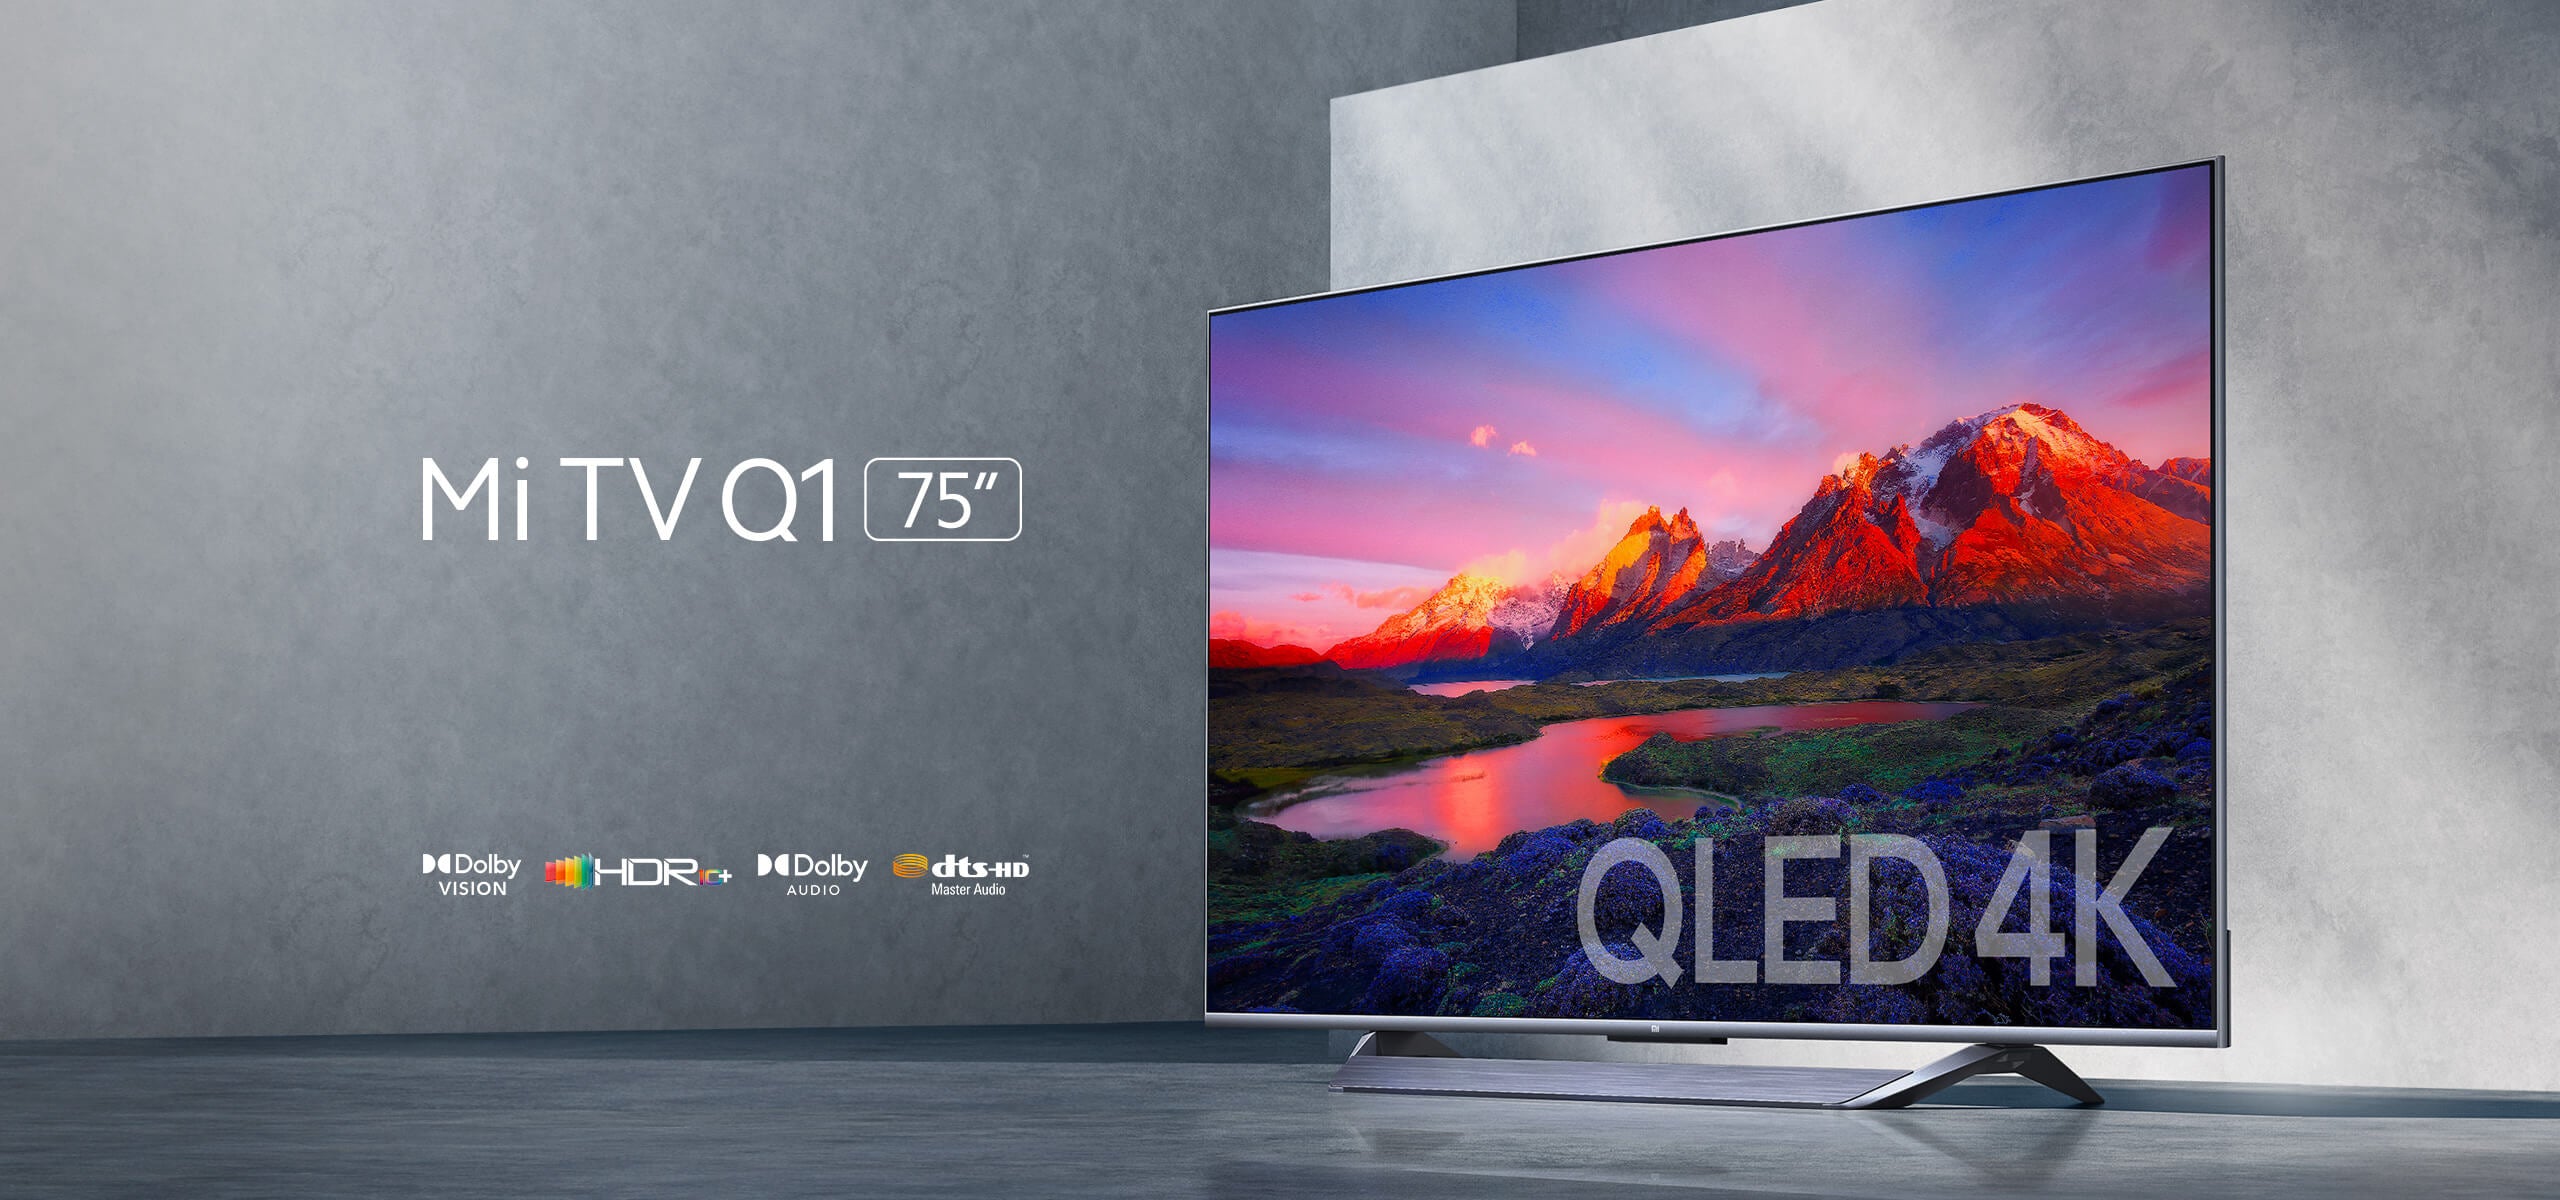 Mi TV Q1 75 Ultra HD - 4K Smart TV – Mymart.pk